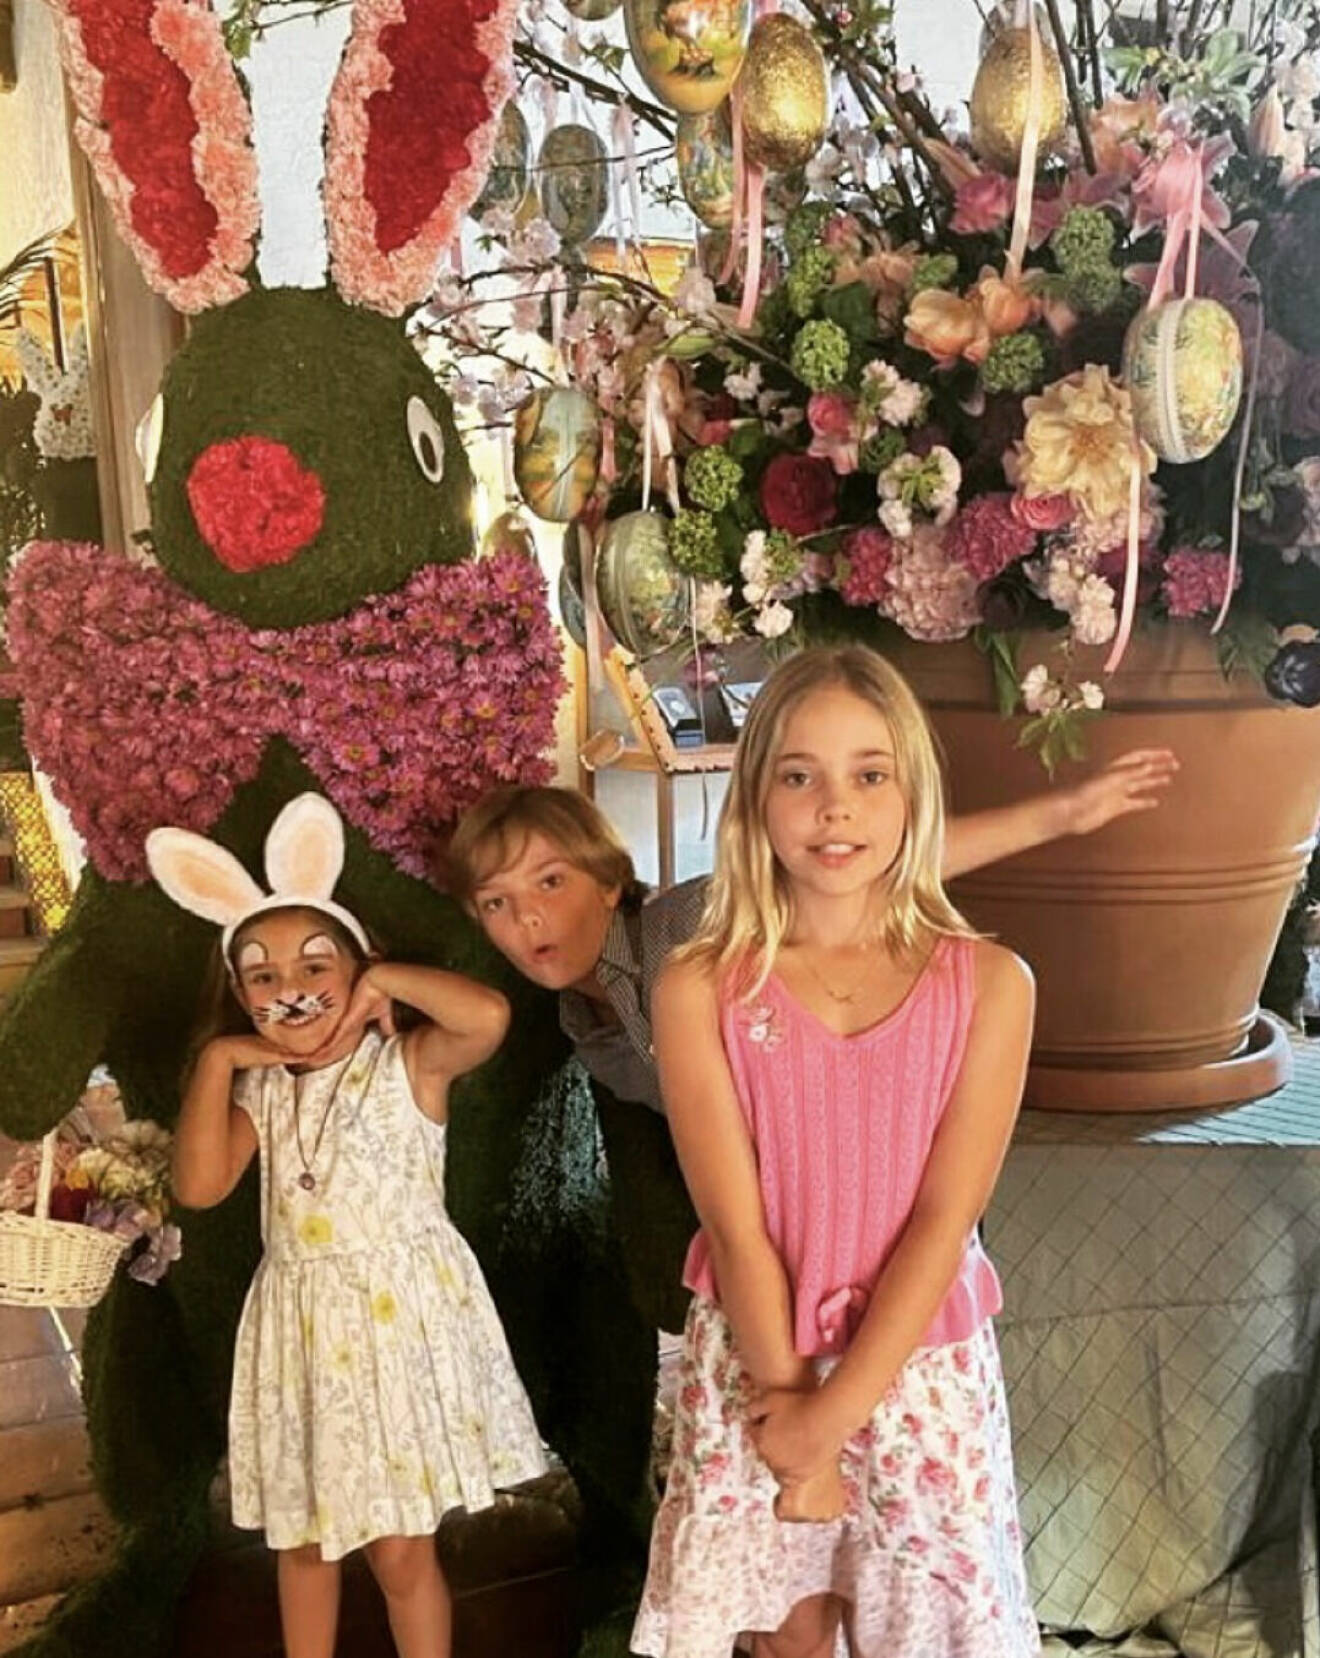 Ett foto från prinsessan Madeleines Instagram på prinsessan Adrienne sminkad till en påskhare, prins Nicolas och prinsessan Leonore